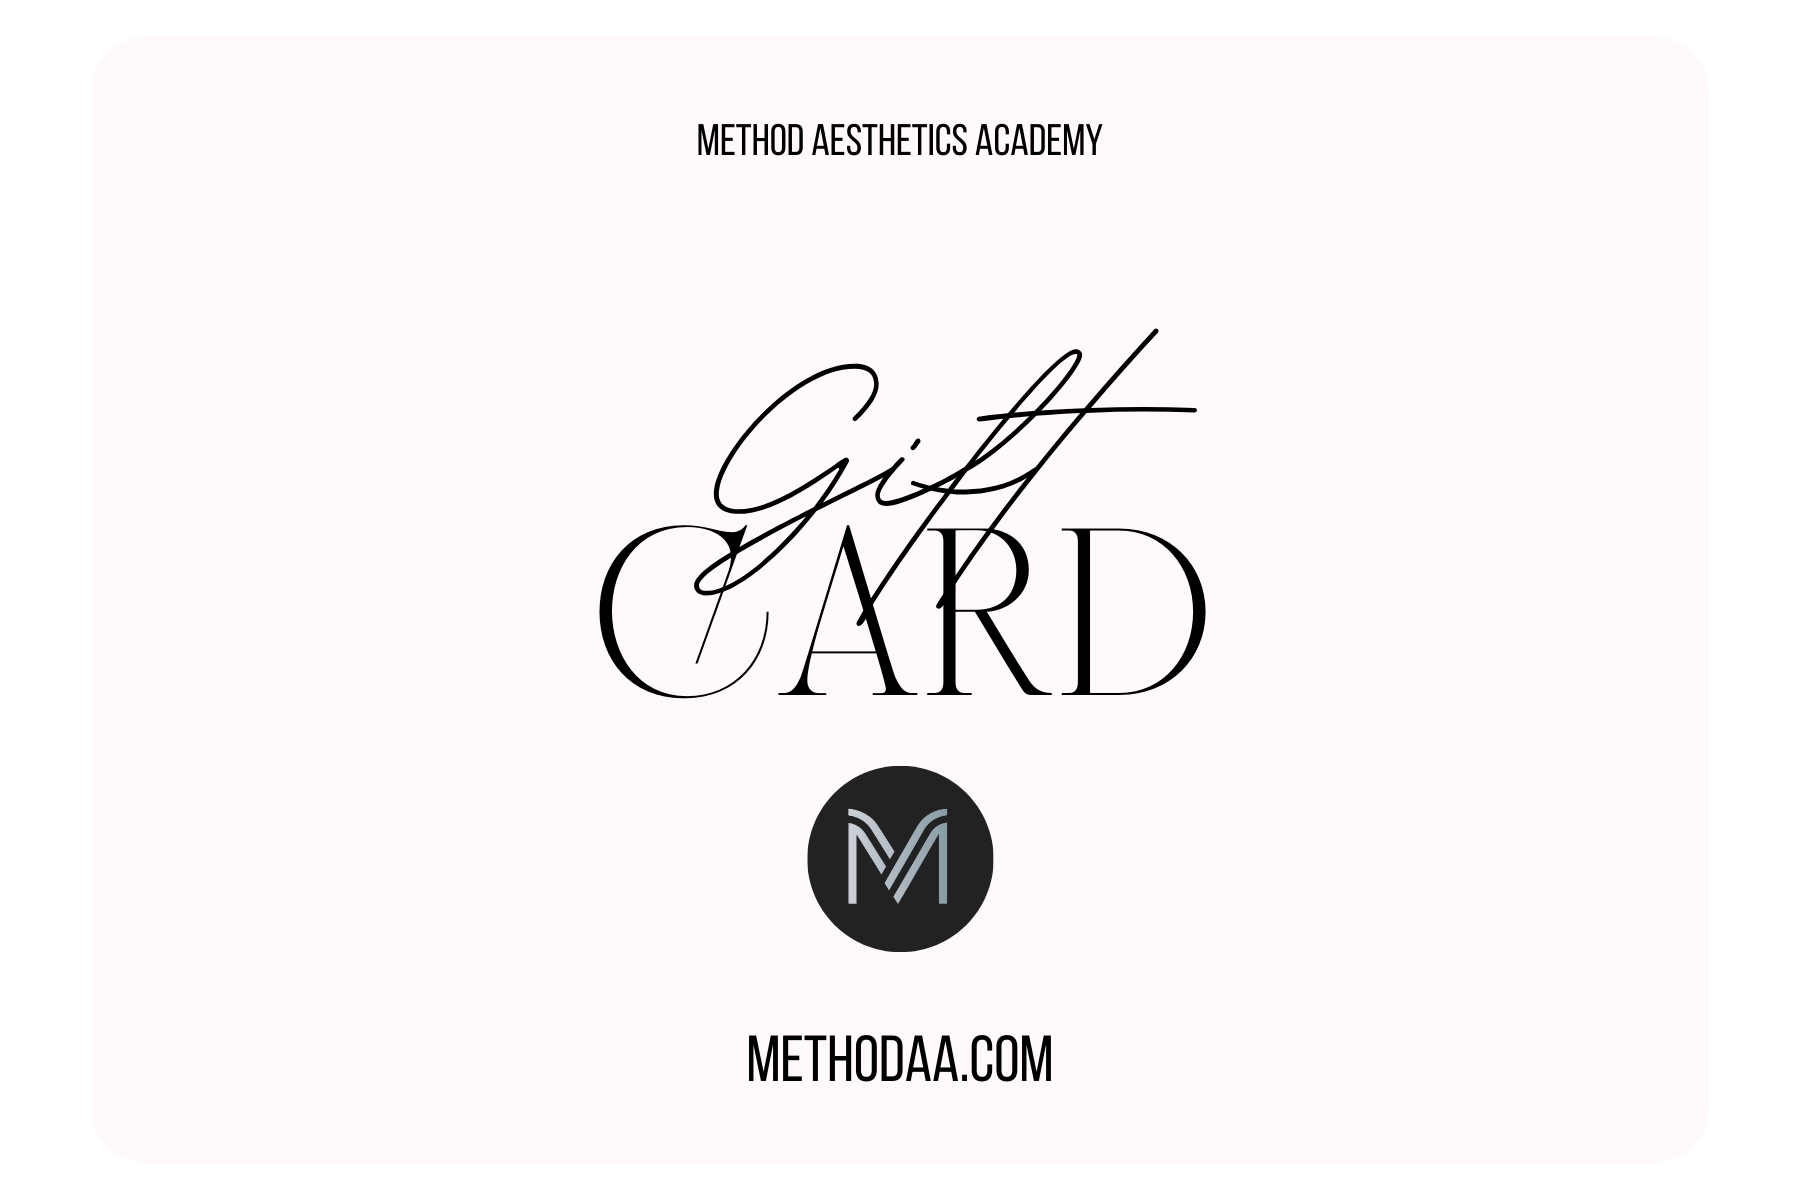 METHOD AESTHETICS ACADEMY GIFT CARD